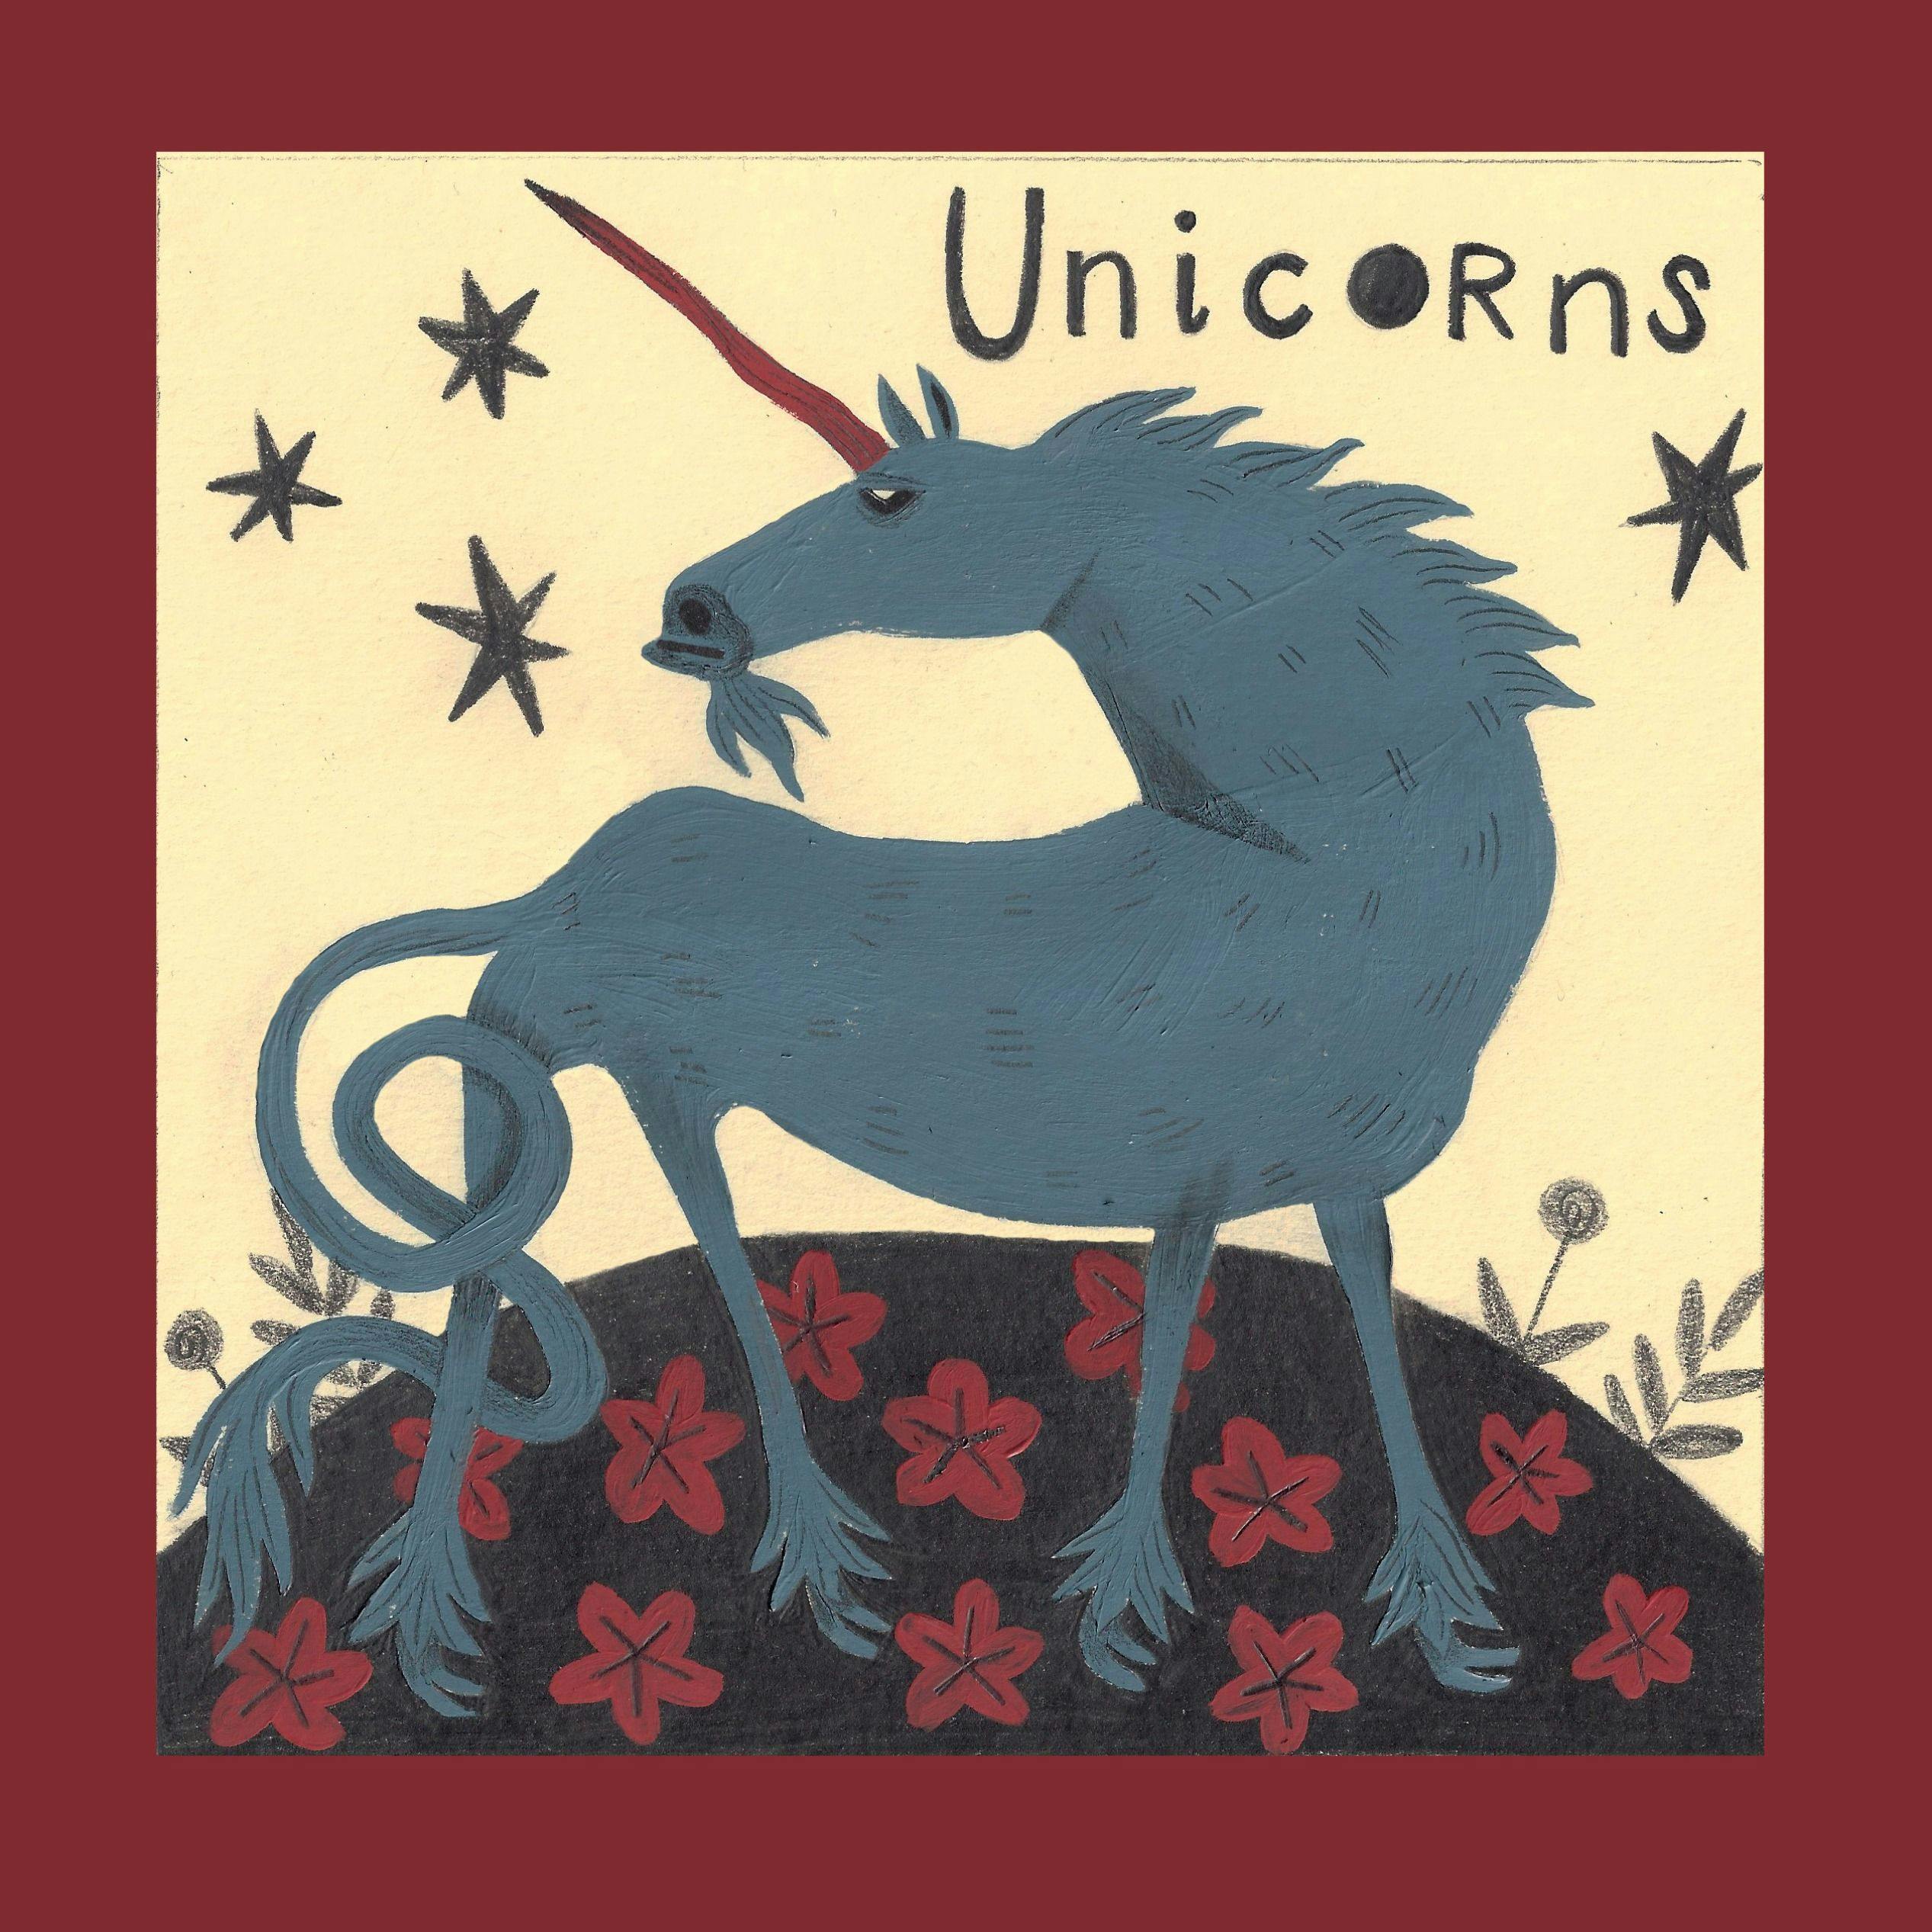 Episode 21: Unicorns